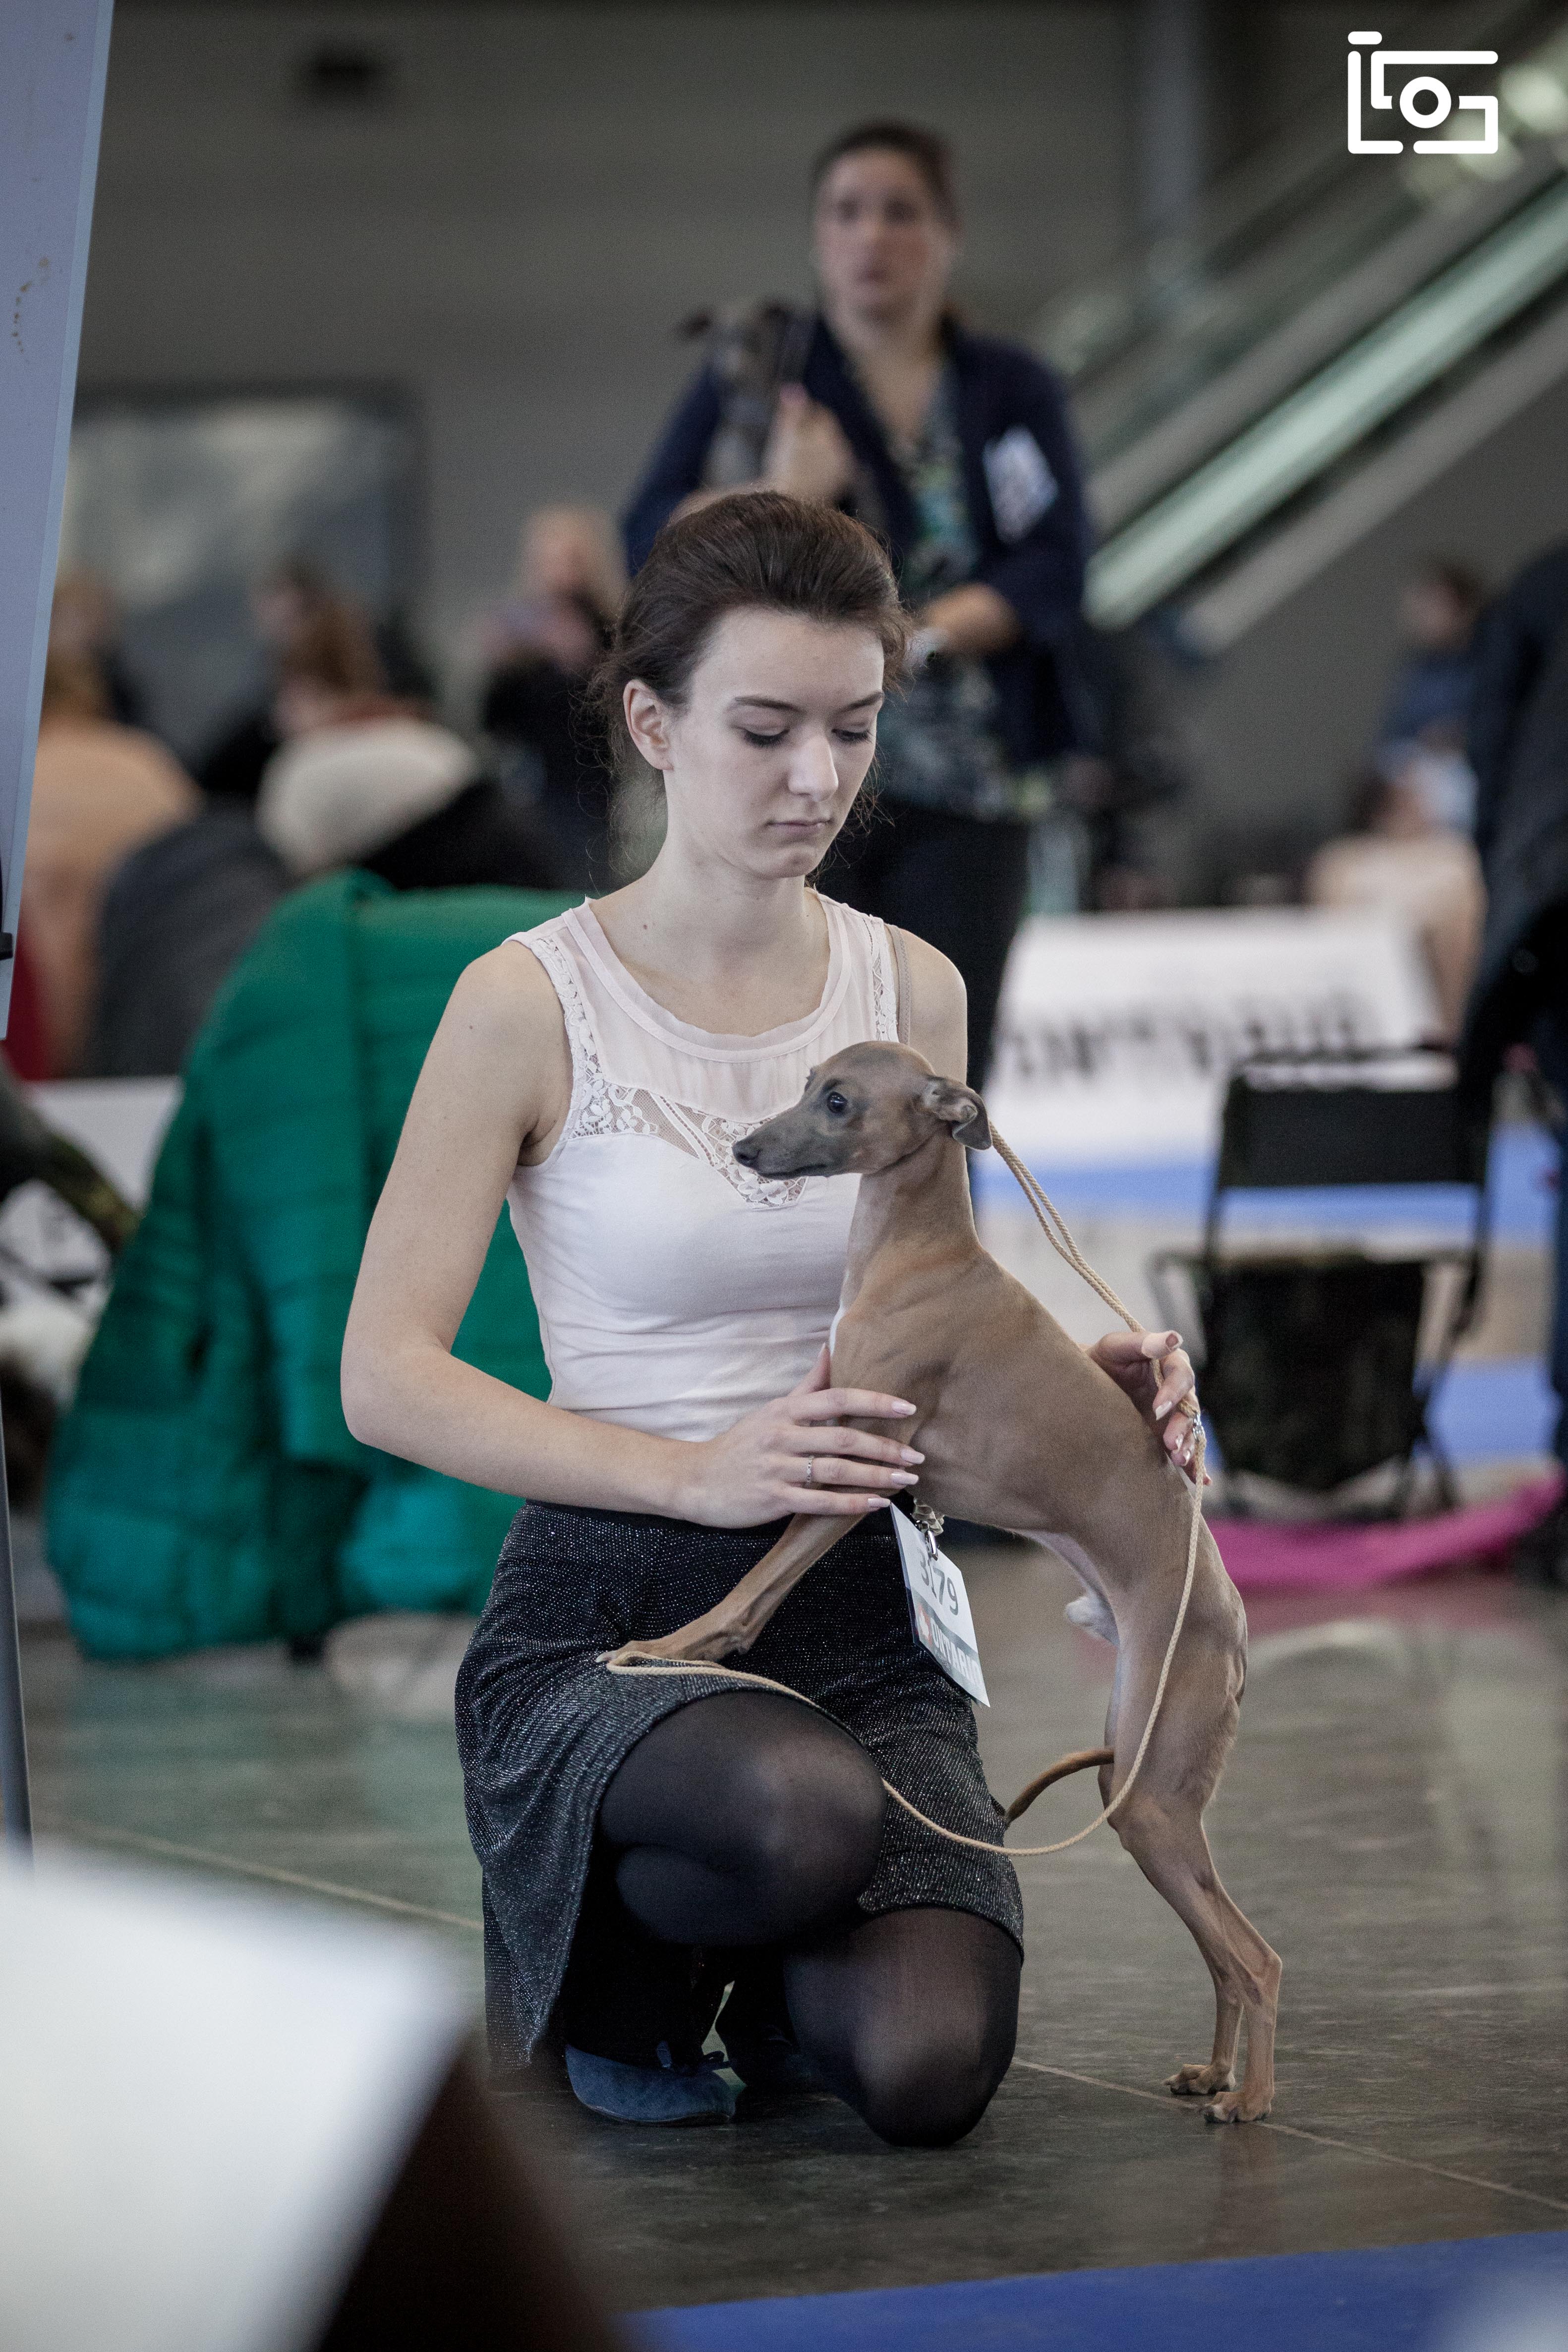 National dog show Brno